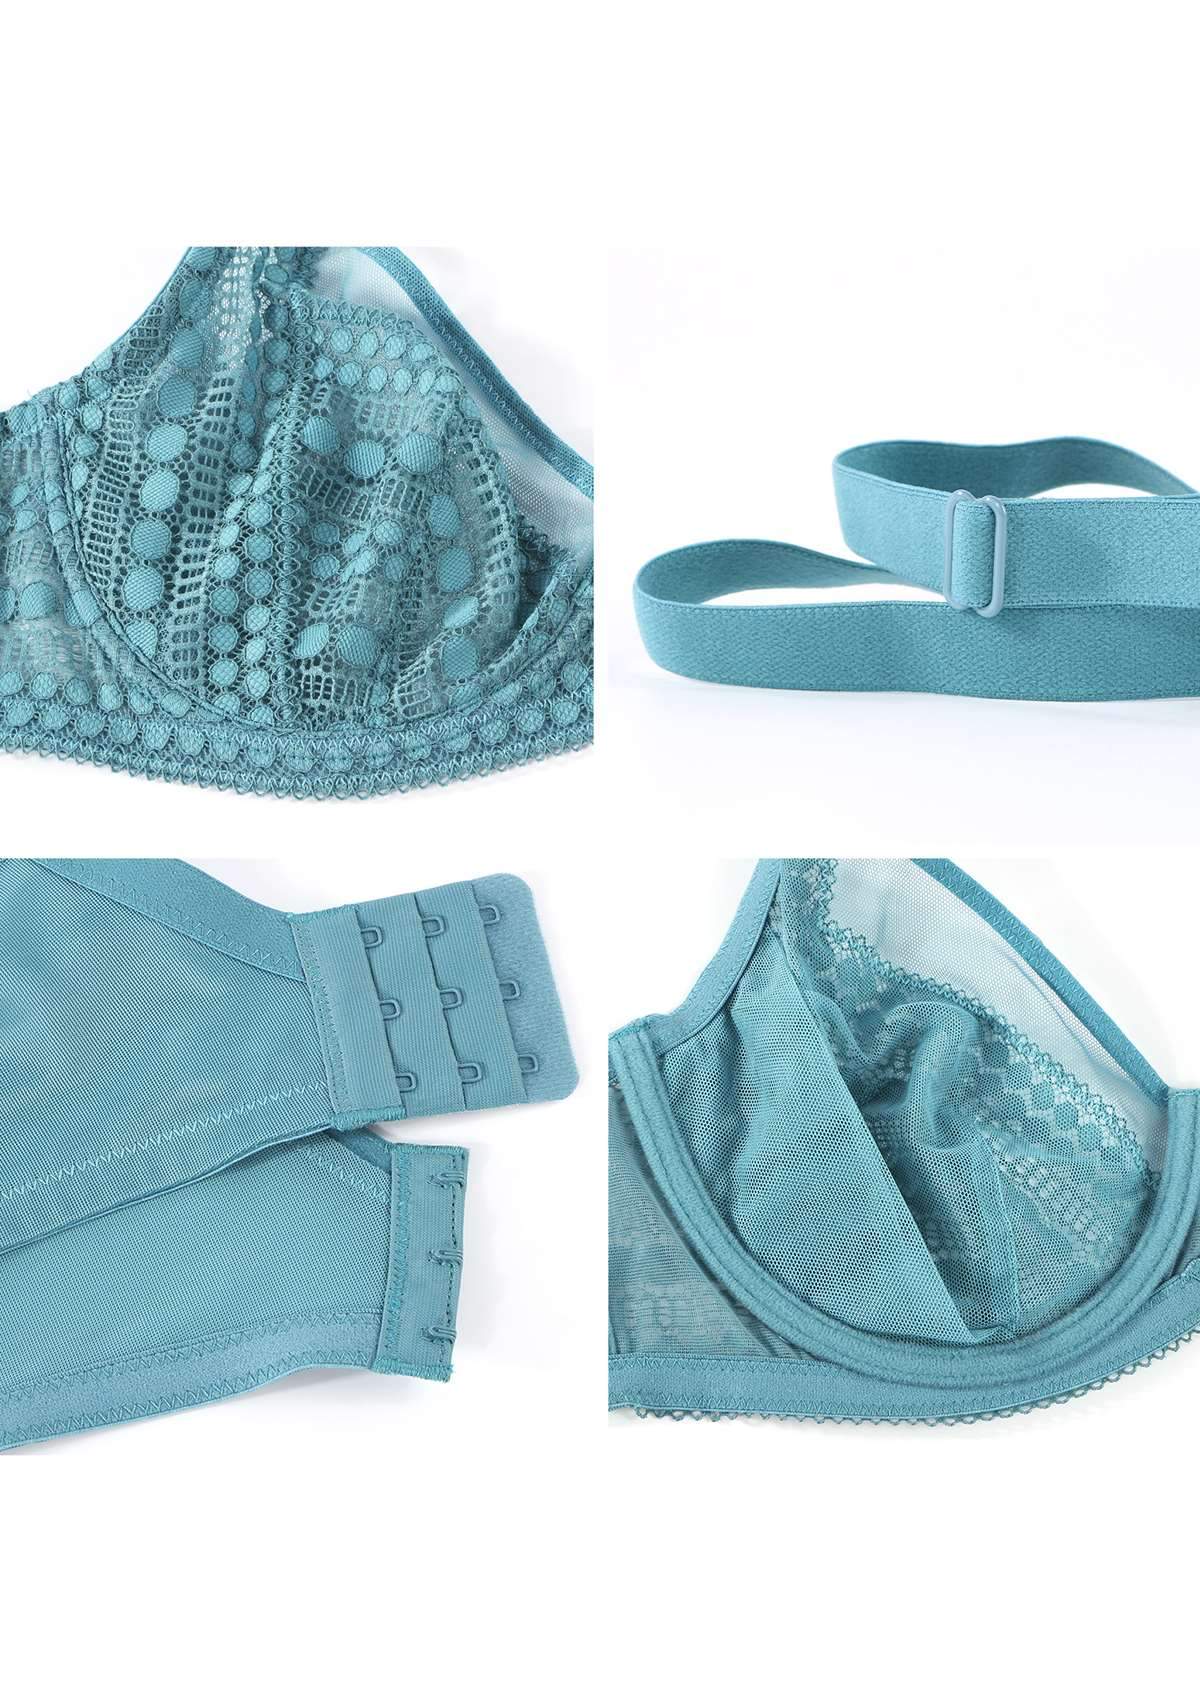 HSIA Heroine Matching Bra And Underwear Set: Bra For Big Boobs - Brittany Blue / 42 / C